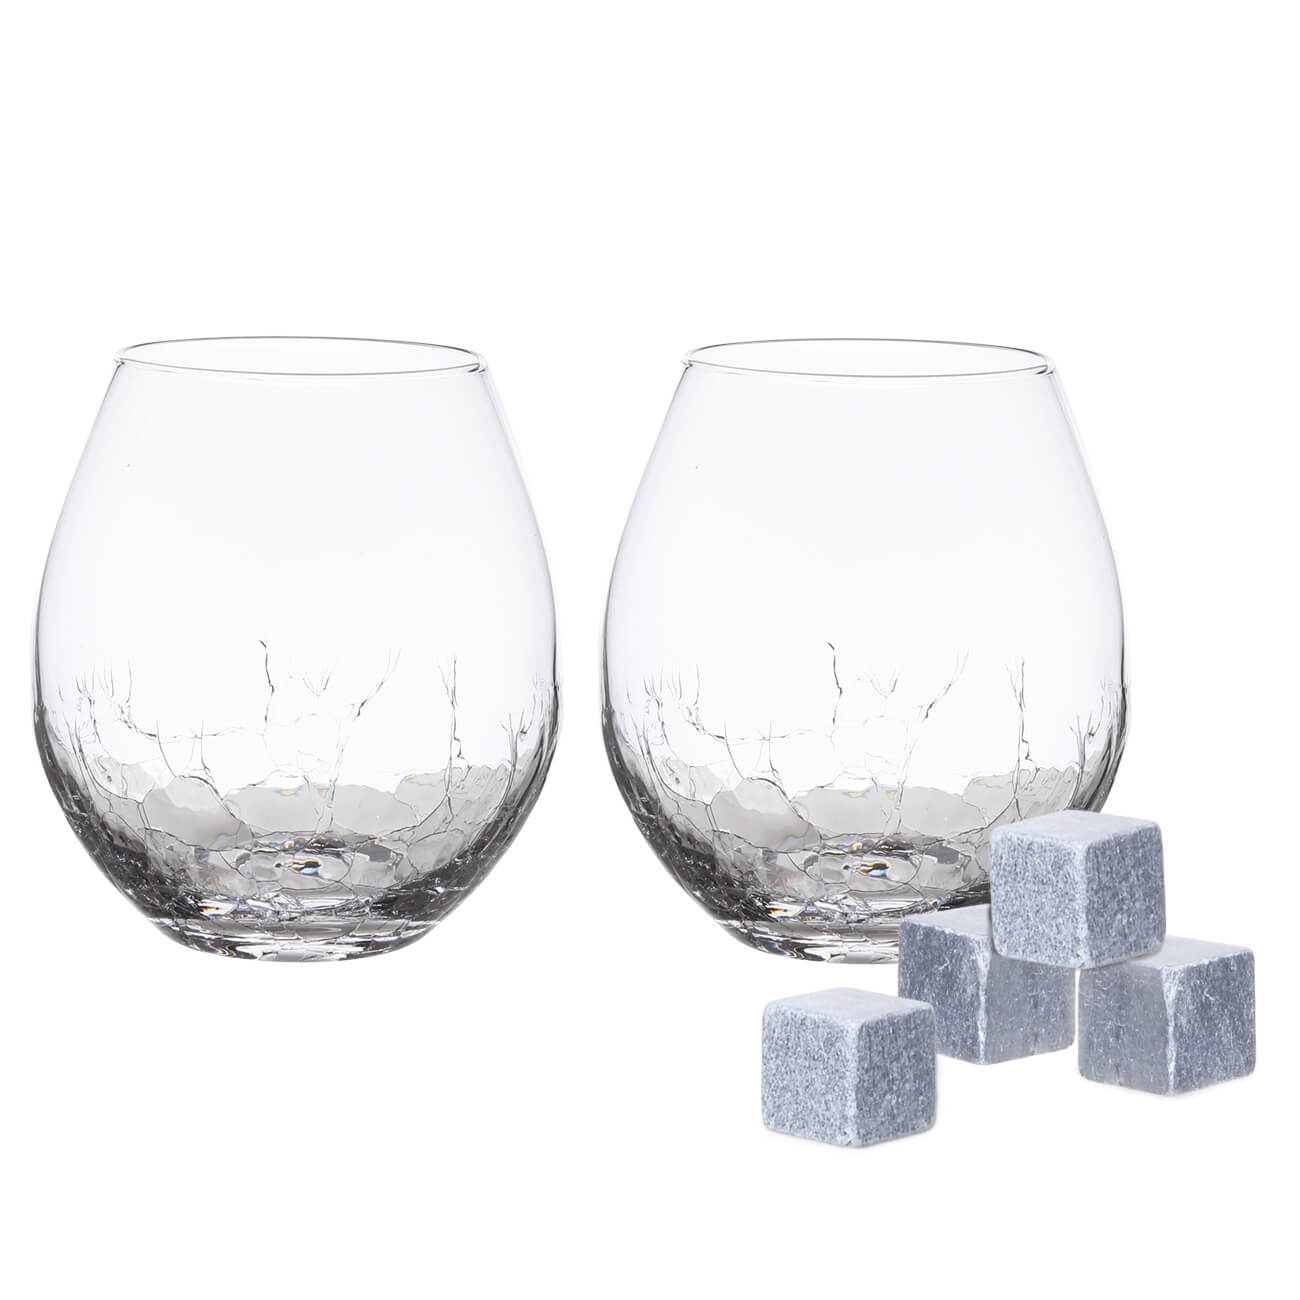 Набор для виски, 2 перс, 6 пр, стаканы/кубики, стекло/стеатит, Кракелюр, Ice набор для приготовления виски